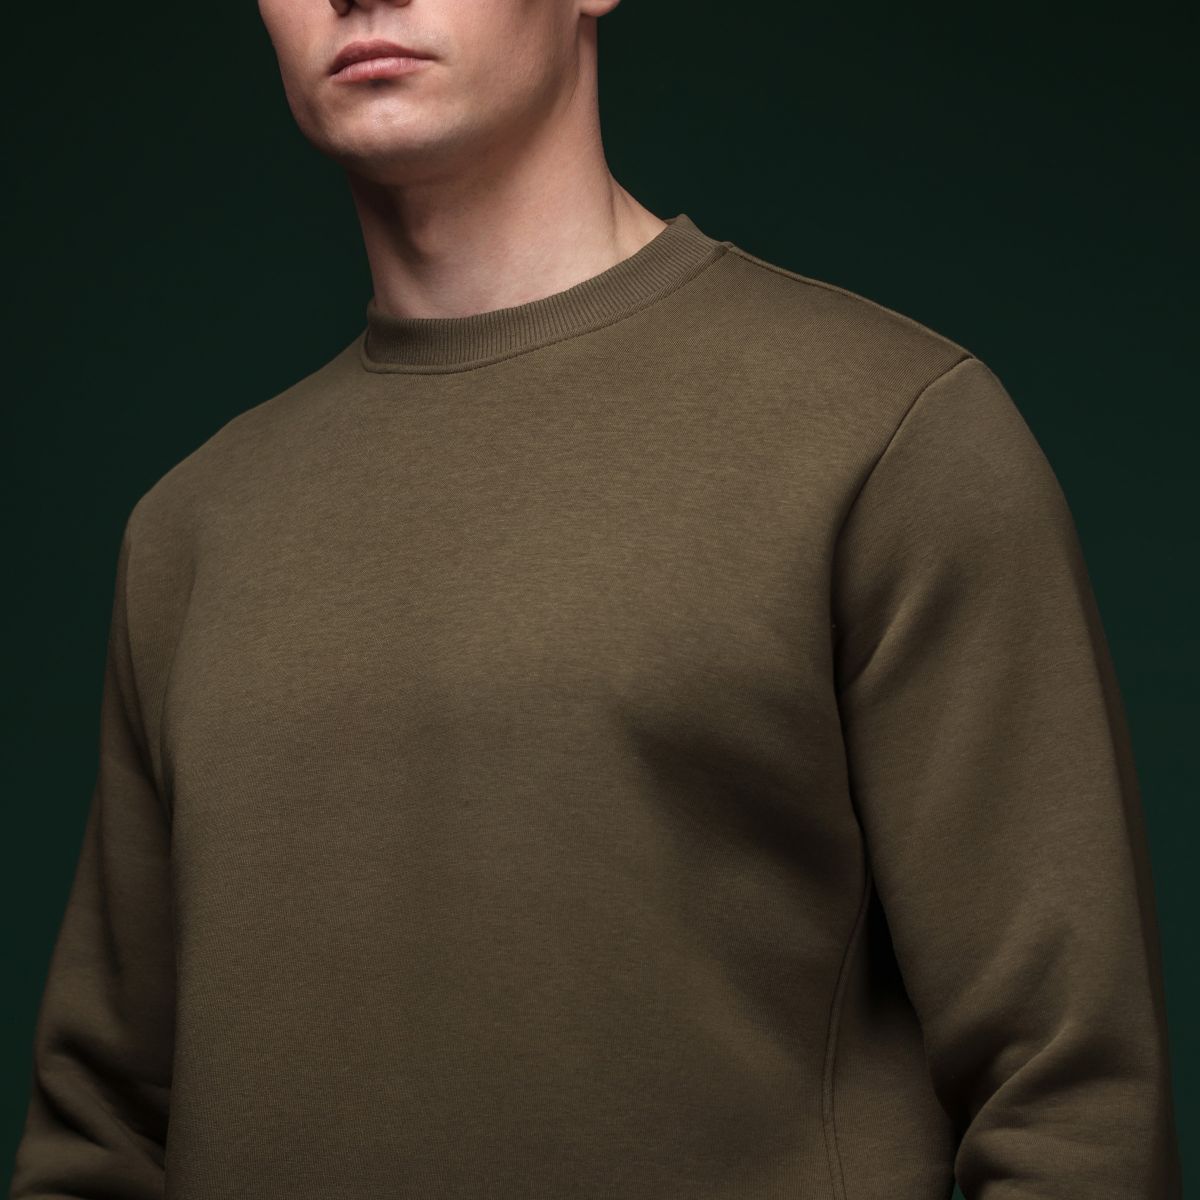 Свитшот Base Soft Sweatshirt. Свободный стиль. Цвет Олива/Olive. Размер S 3